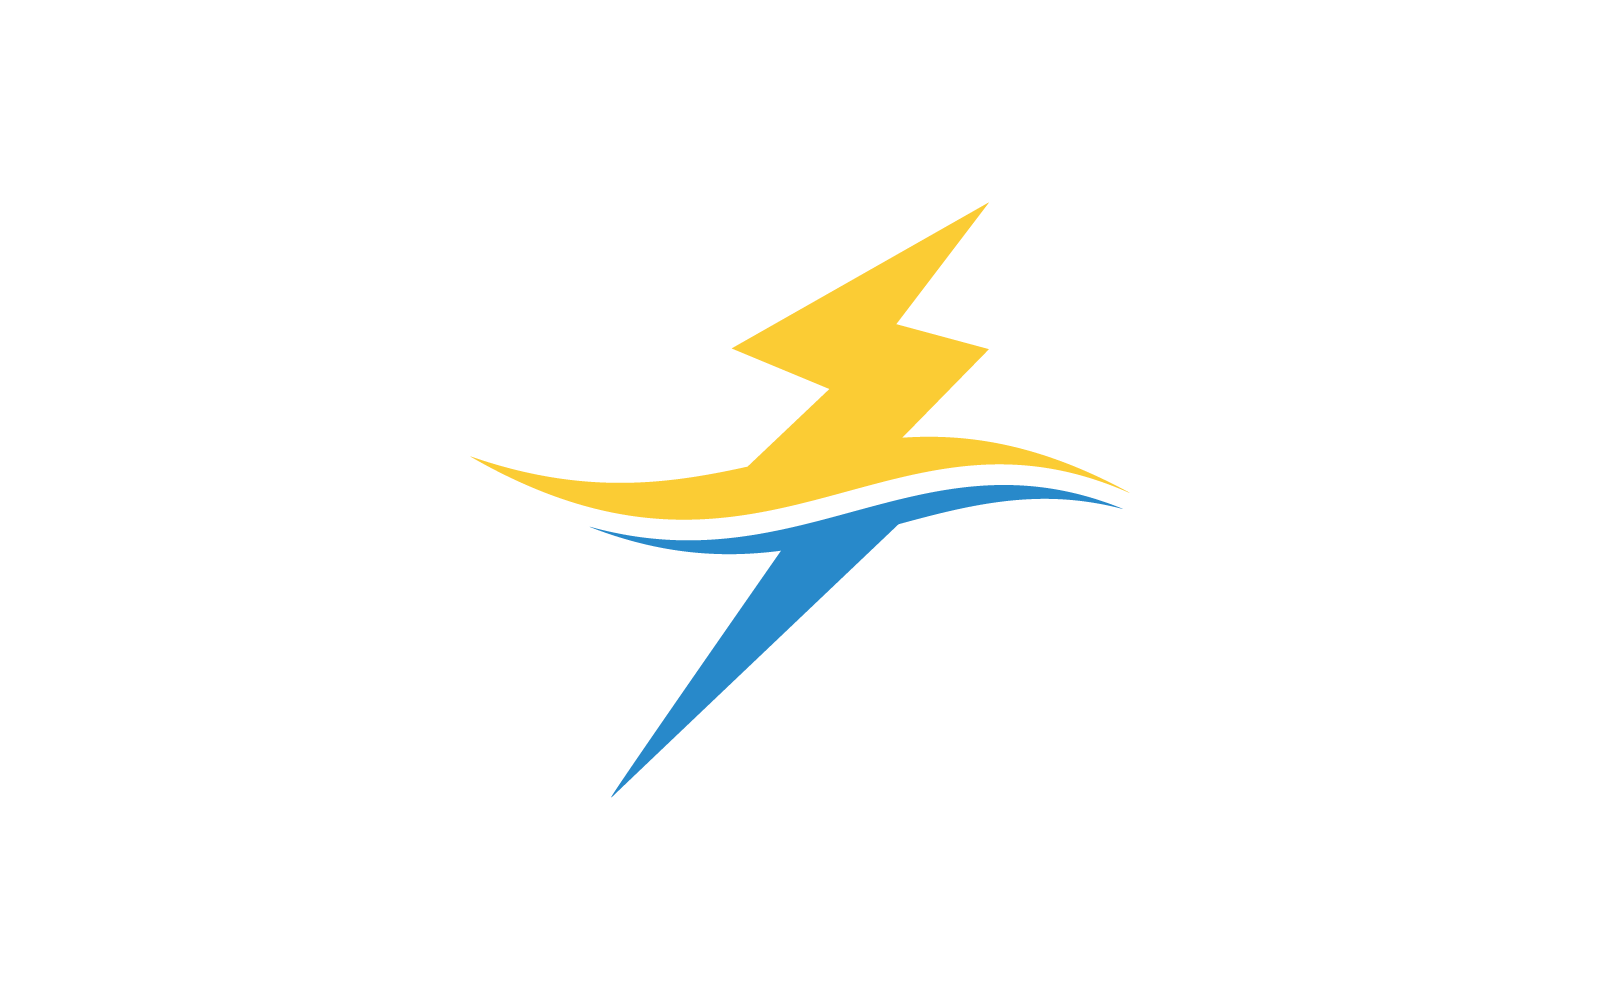 Power lightning power energy logo vector design template Logo Template